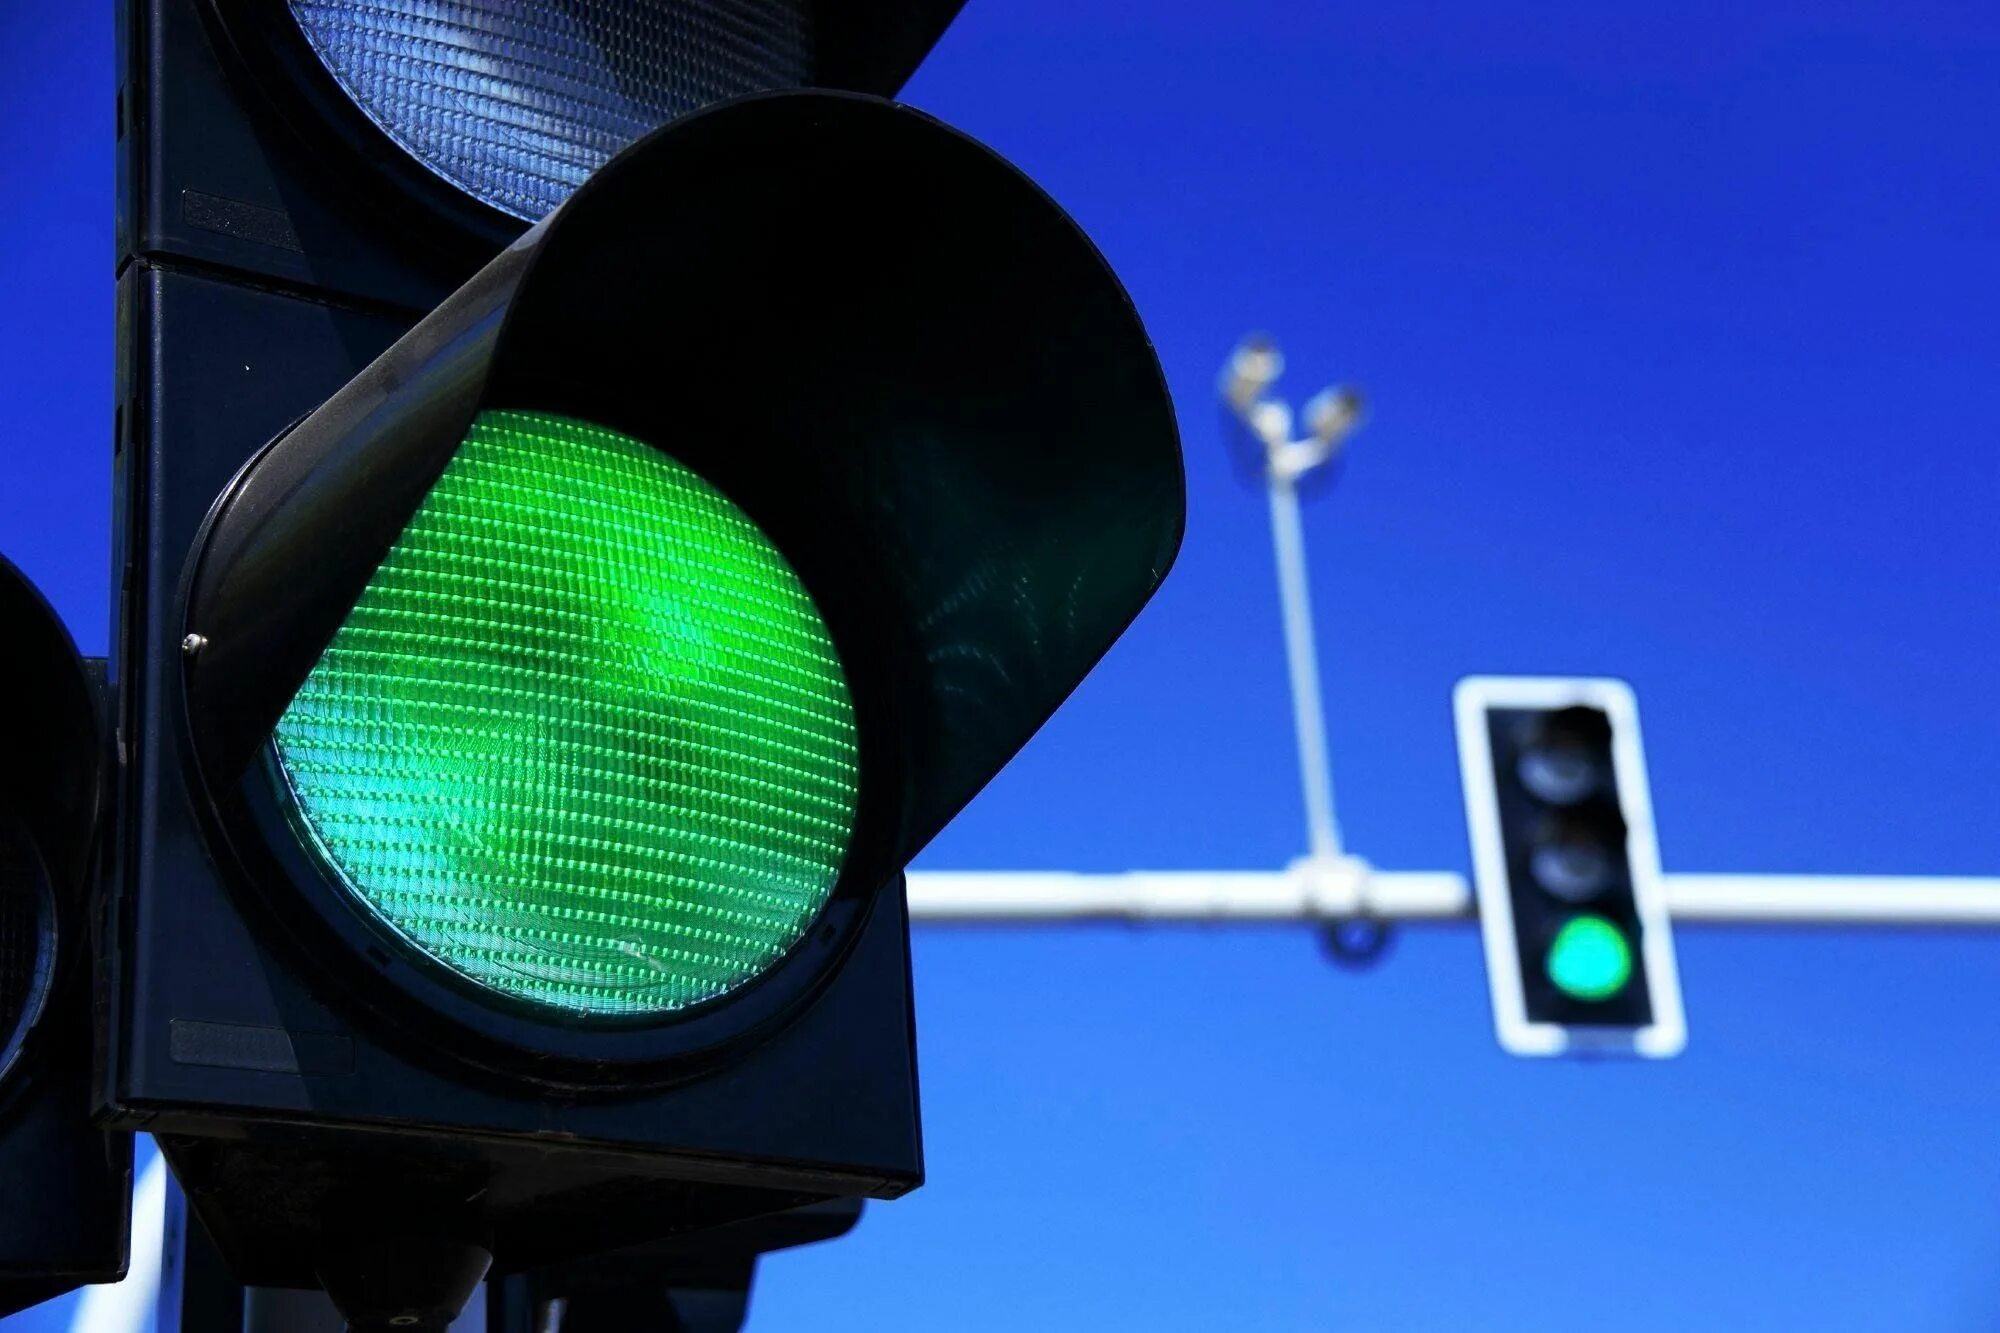 Зеленый светофор. Зеленый сигнал светофора. Зеленый свет светофора. Зеленый цвет светофора. Зеленый свет жизни